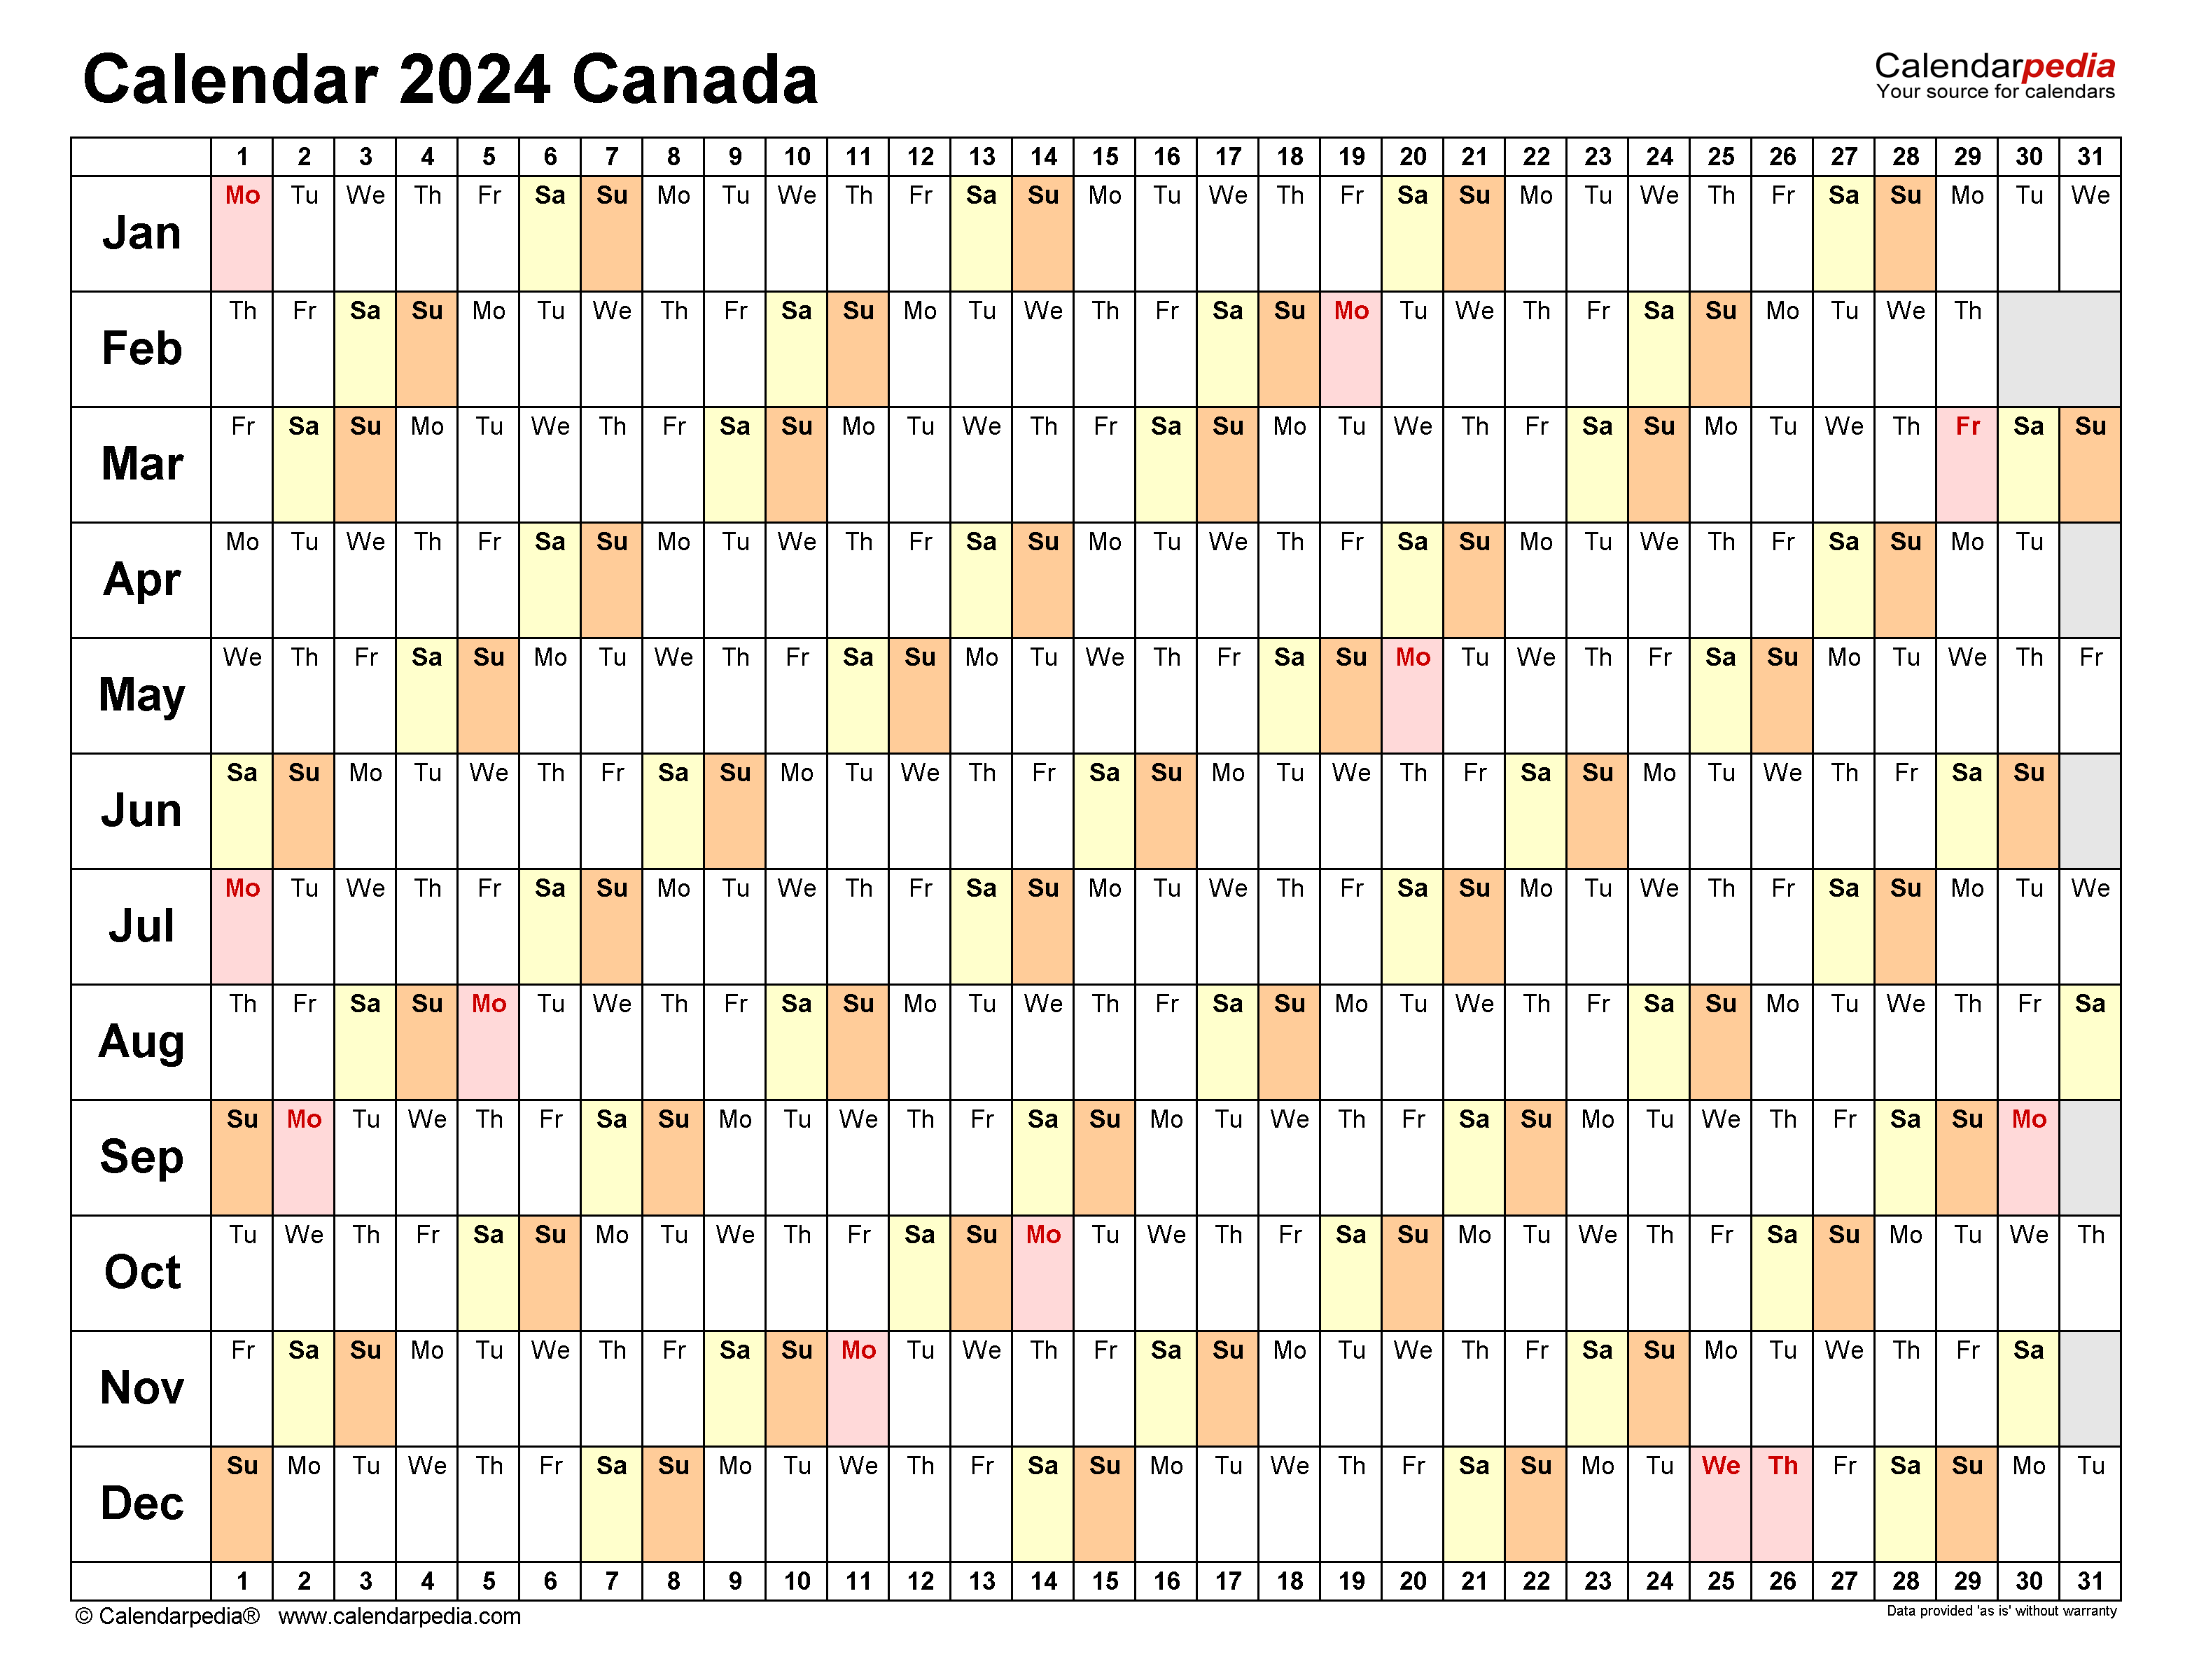 Calendar 2023 2024 Canada Time And Date Calendar 2023 Canada - Free Printable 2024 Calendar Canada Printable With Holidays